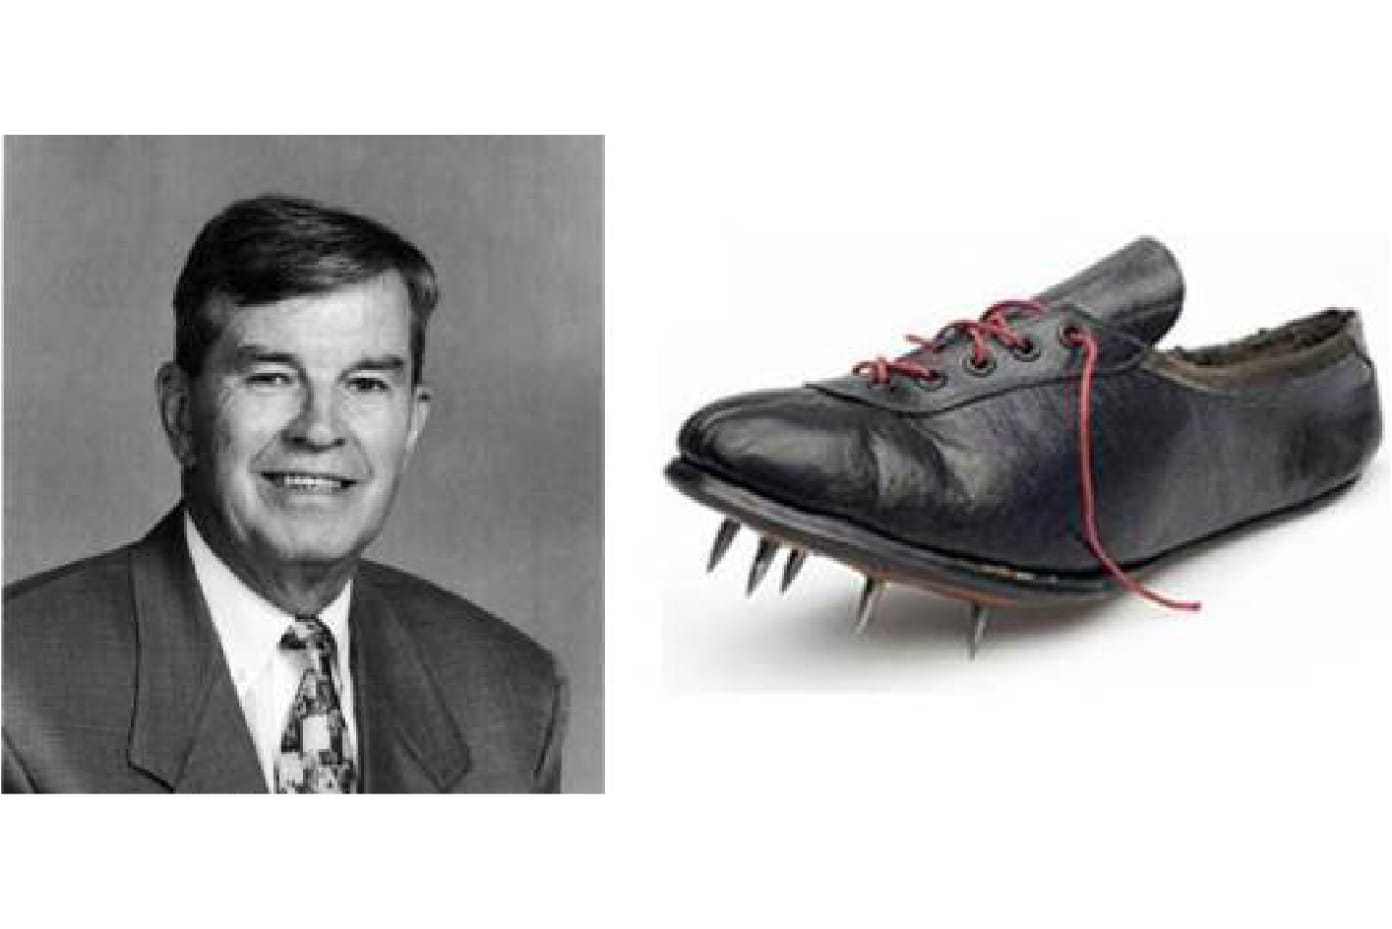 Первые в мире кроссовки